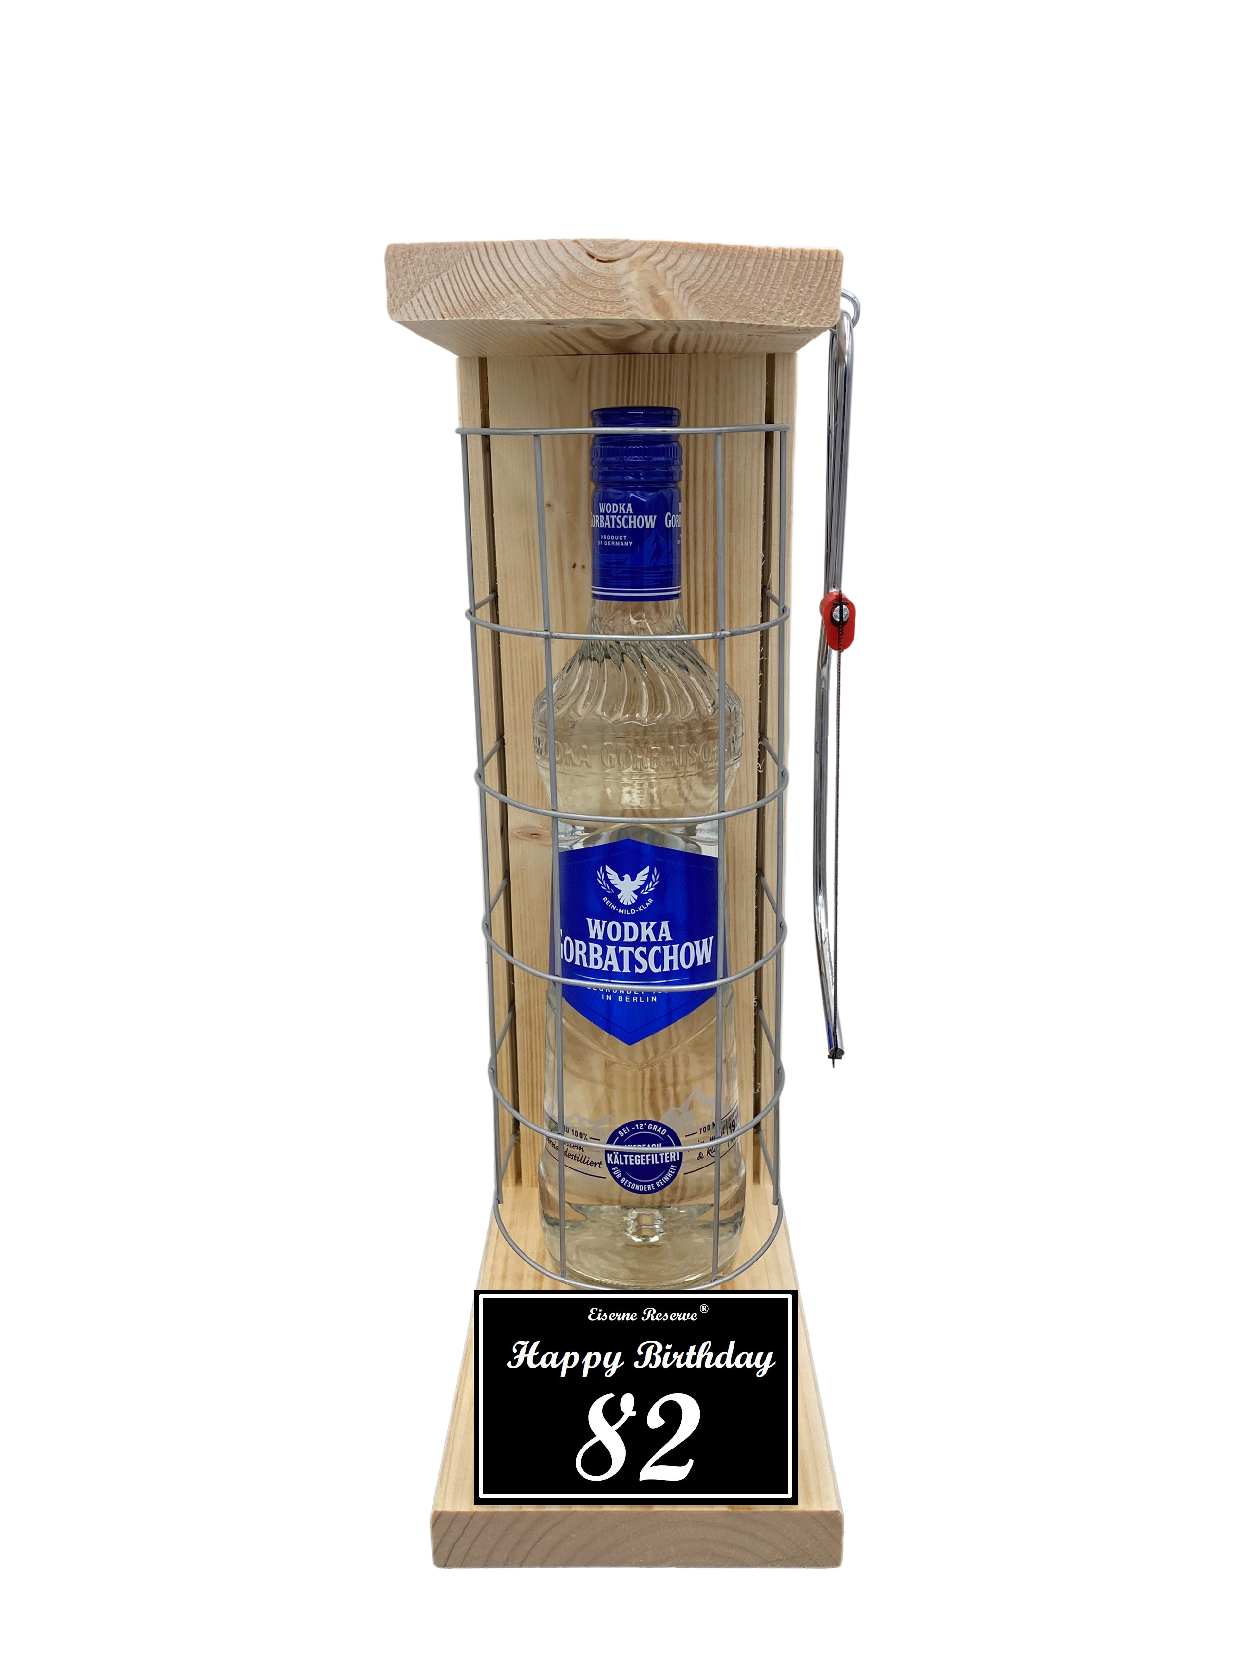 Wodka Geschenk zum 82 Geburtstag - Eiserne Reserve Gitterkäfig